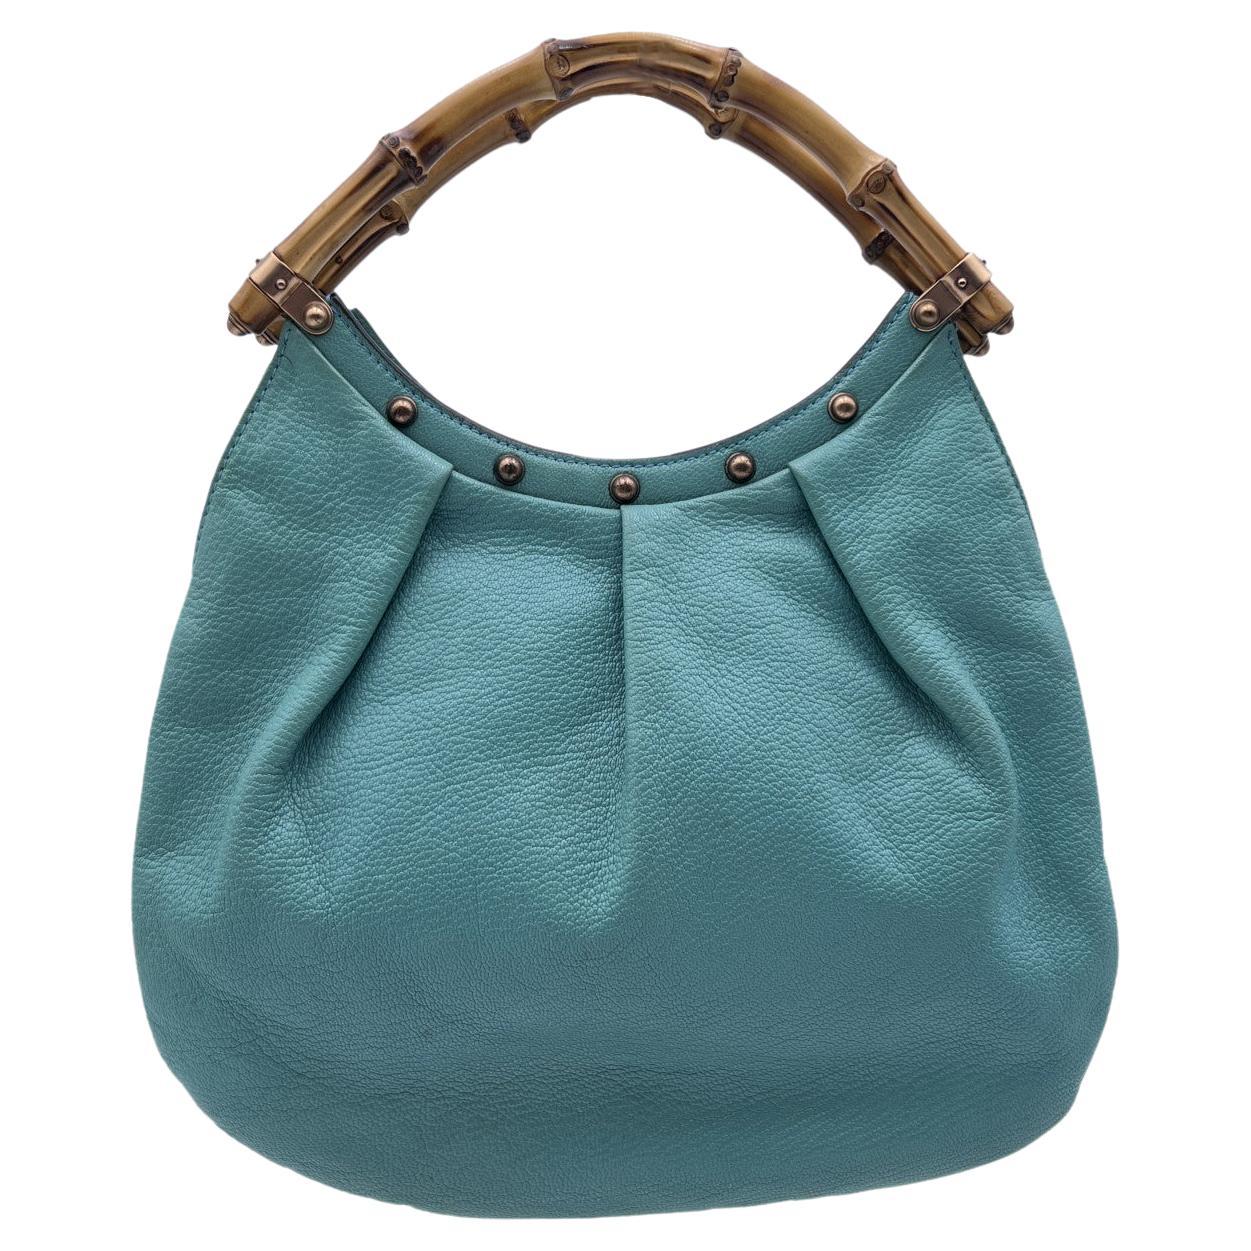 Gucci Turquoise Leather Bamboo Studded Handbag Hobo Bag For Sale